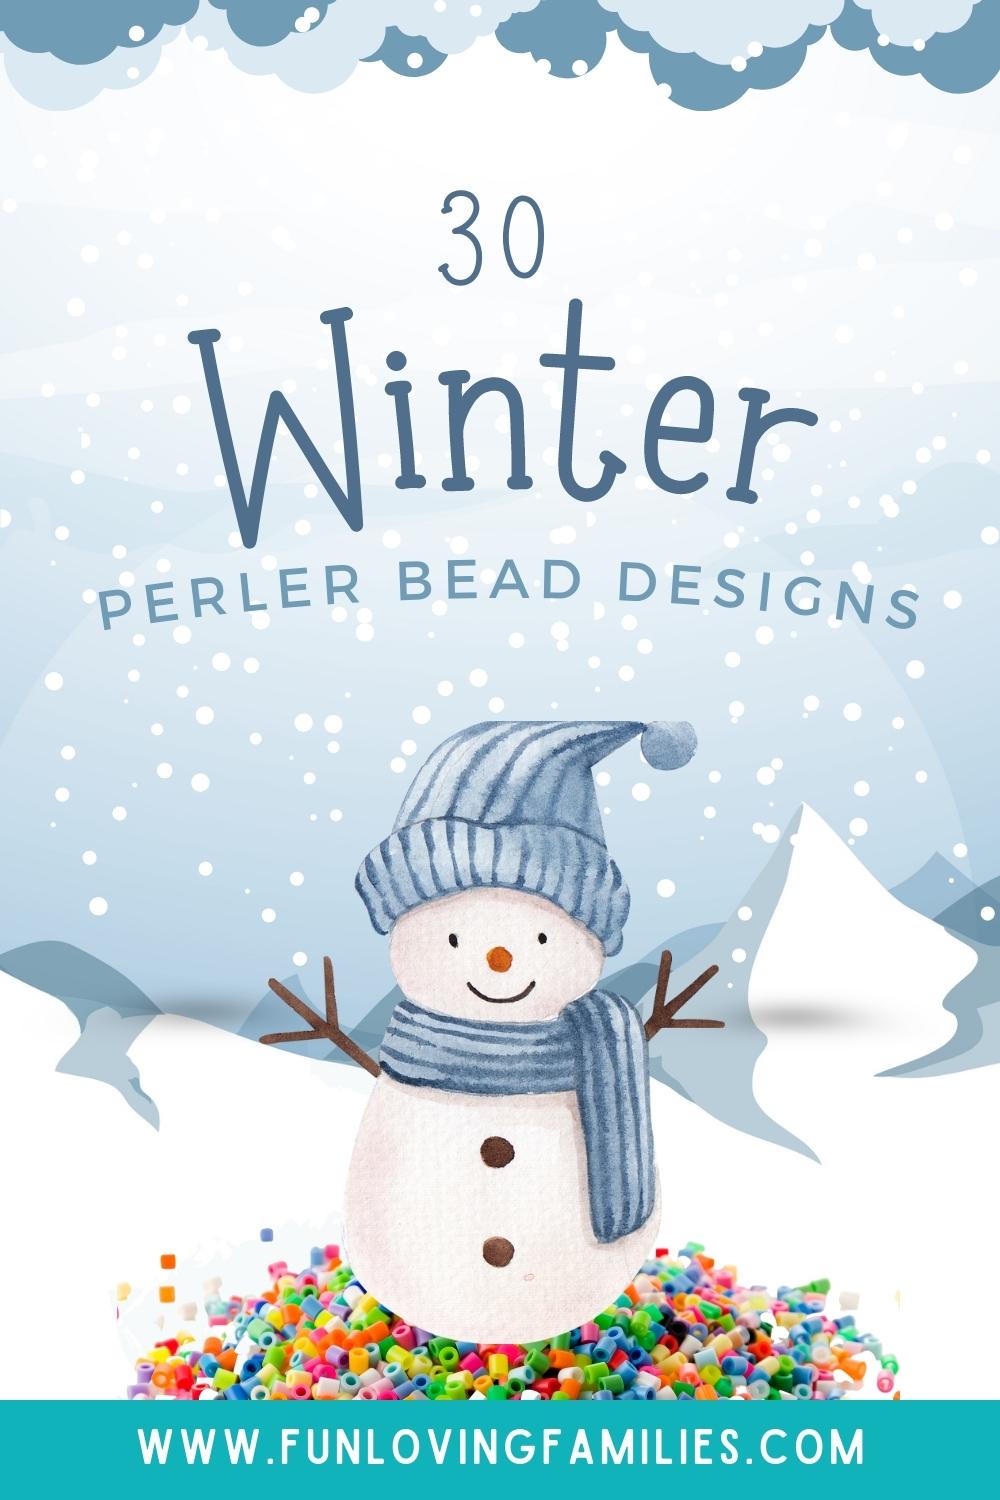 Winter perler bead designs pin image